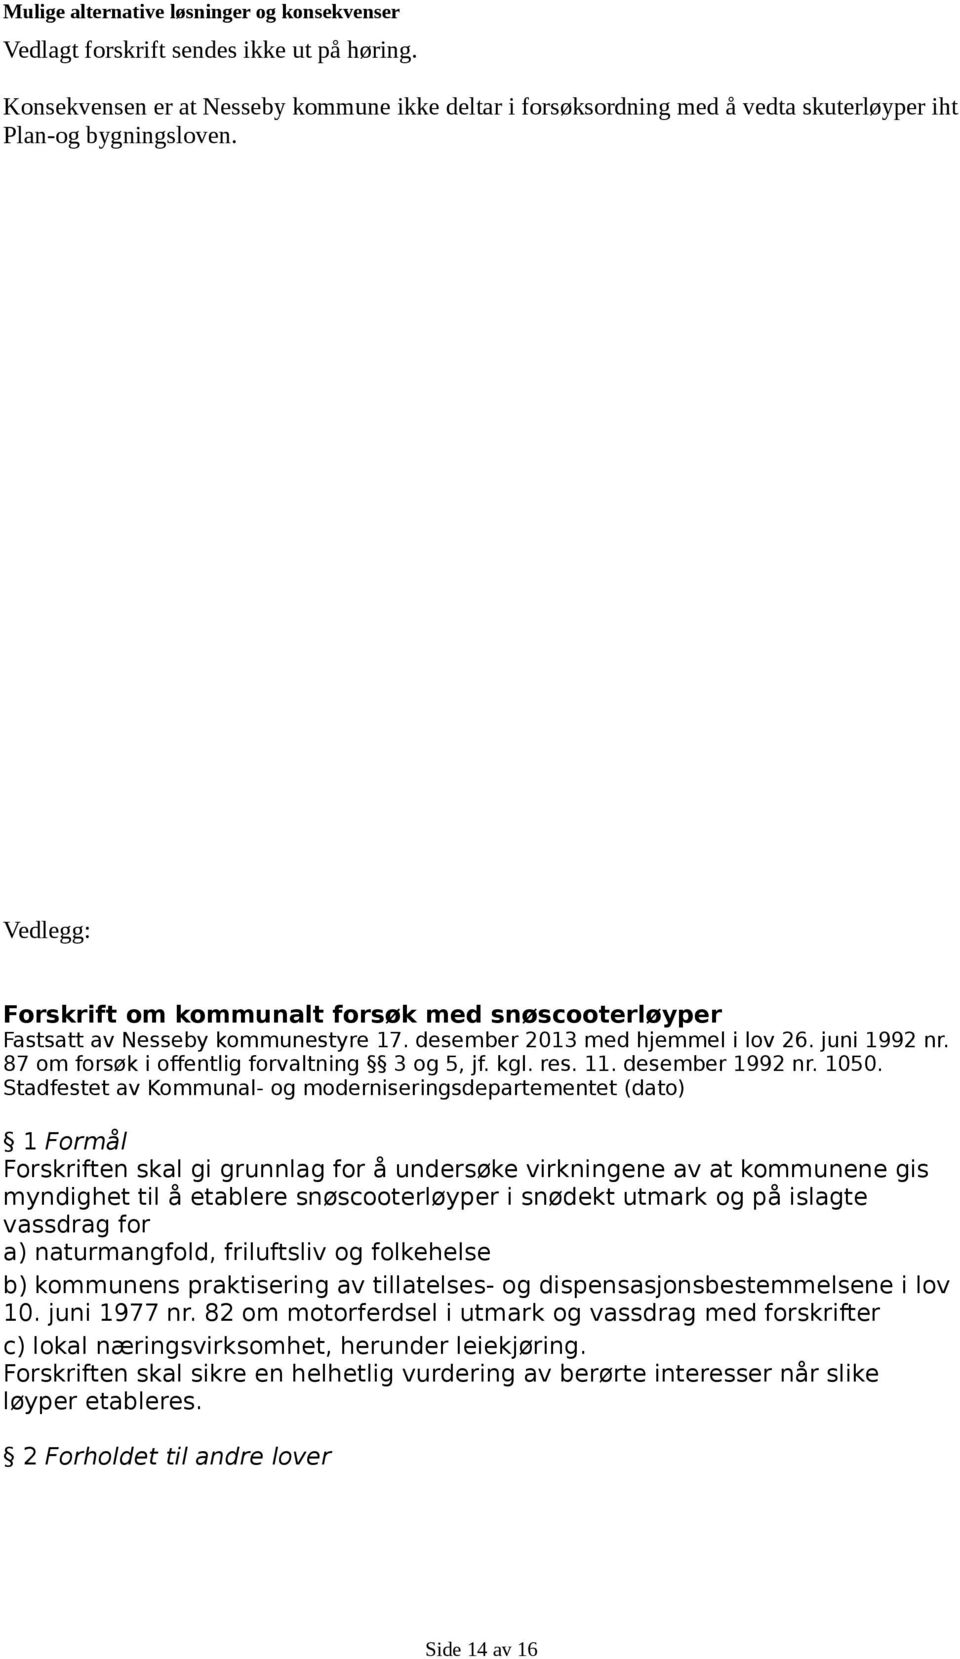 Vedlegg: Forskrift om kommunalt forsøk med snøscooterløyper Fastsatt av Nesseby kommunestyre 17. desember 2013 med hjemmel i lov 26. juni 1992 nr. 87 om forsøk i offentlig forvaltning 3 og 5, jf. kgl.